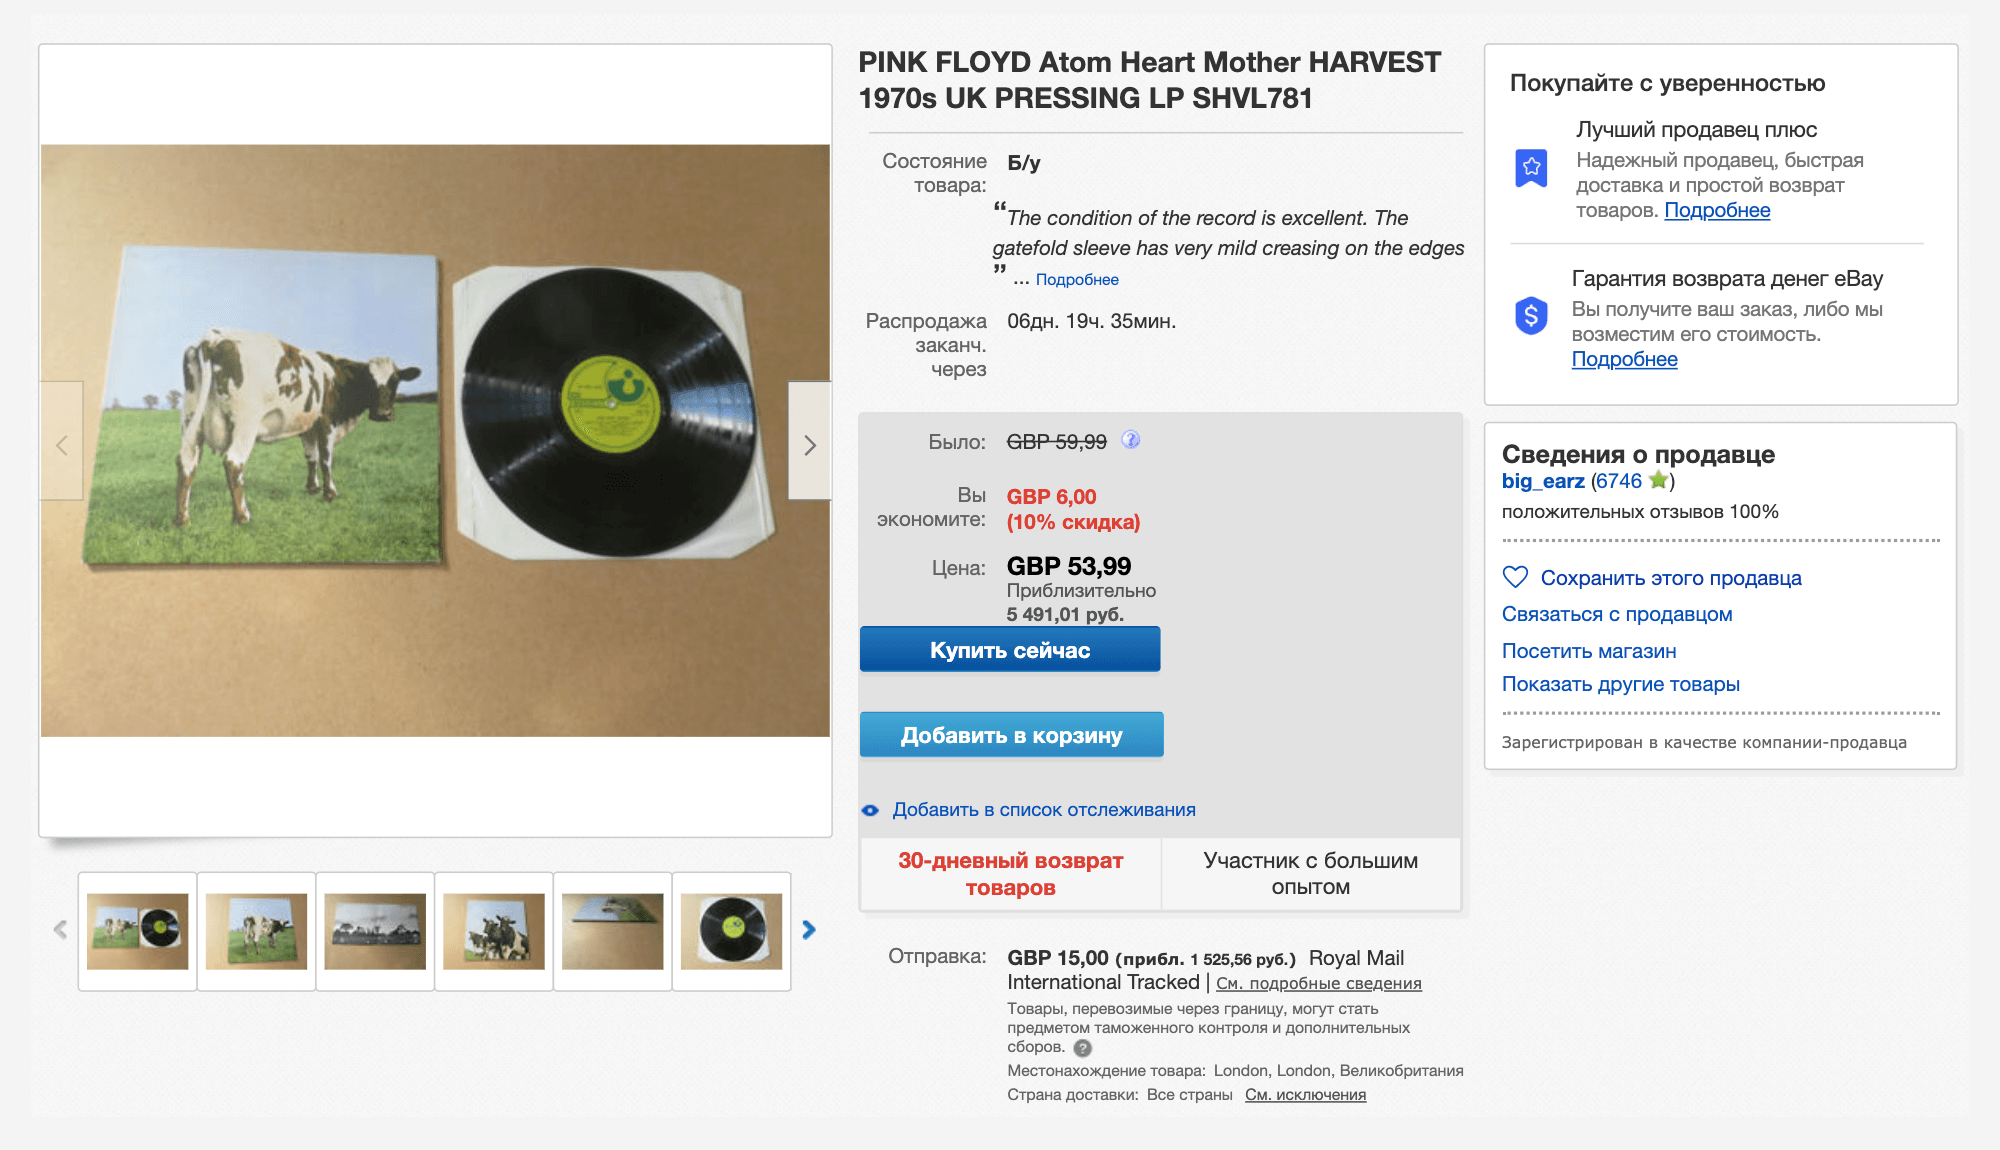 Альбом Atom Heart Mother 1970 года английской группы Pink Floyd в отличном состоянии на интернет-аукционе «Ибэй» стоит 64 £.. Еще придется доплатить за доставку из Англии. У продавца только положительные отзывы, поэтому описанию можно верить